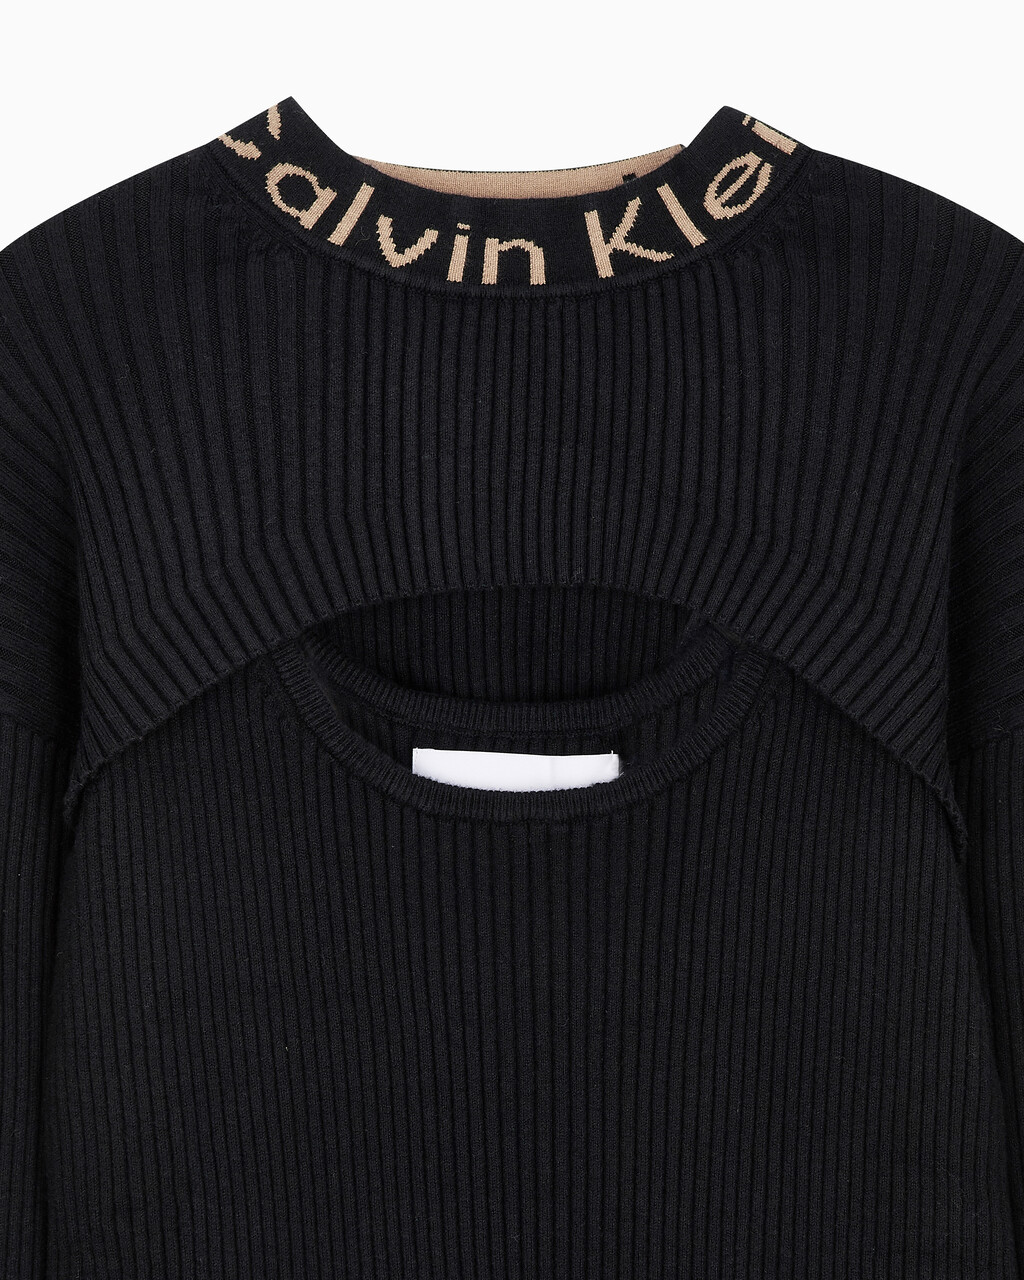 Buy 여성 롱 슬리브 2 in 1 스웨터 원피스 in color CK BLACK